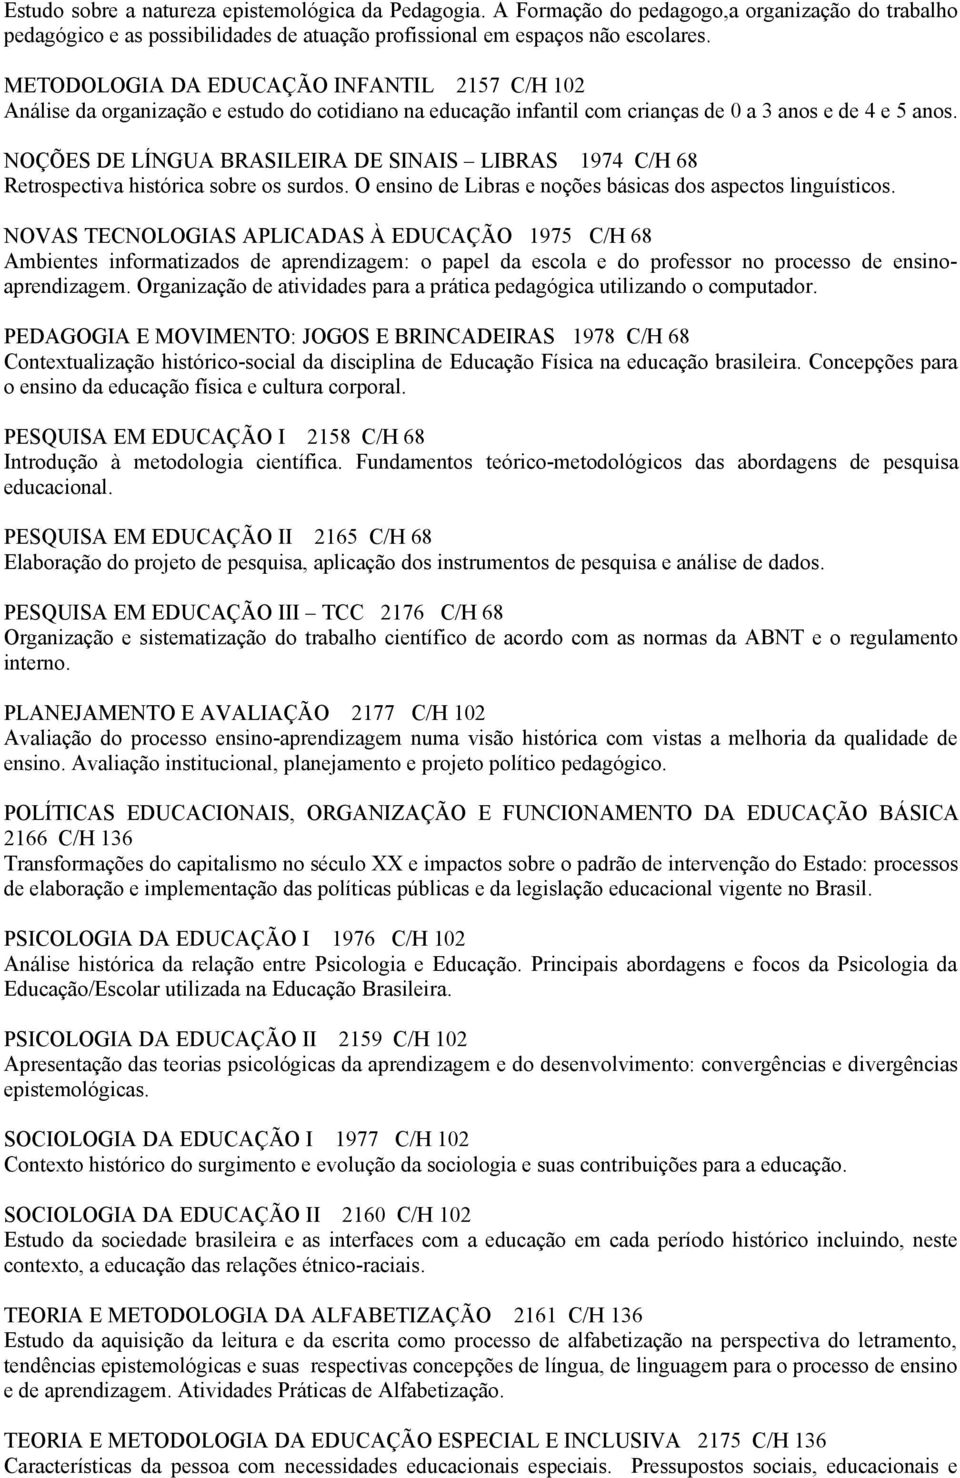 NOÇÕES DE LÍNGUA BRASILEIRA DE SINAIS LIBRAS 1974 C/H 68 Retrospectiva histórica sobre os surdos. O ensino de Libras e noções básicas dos aspectos linguísticos.